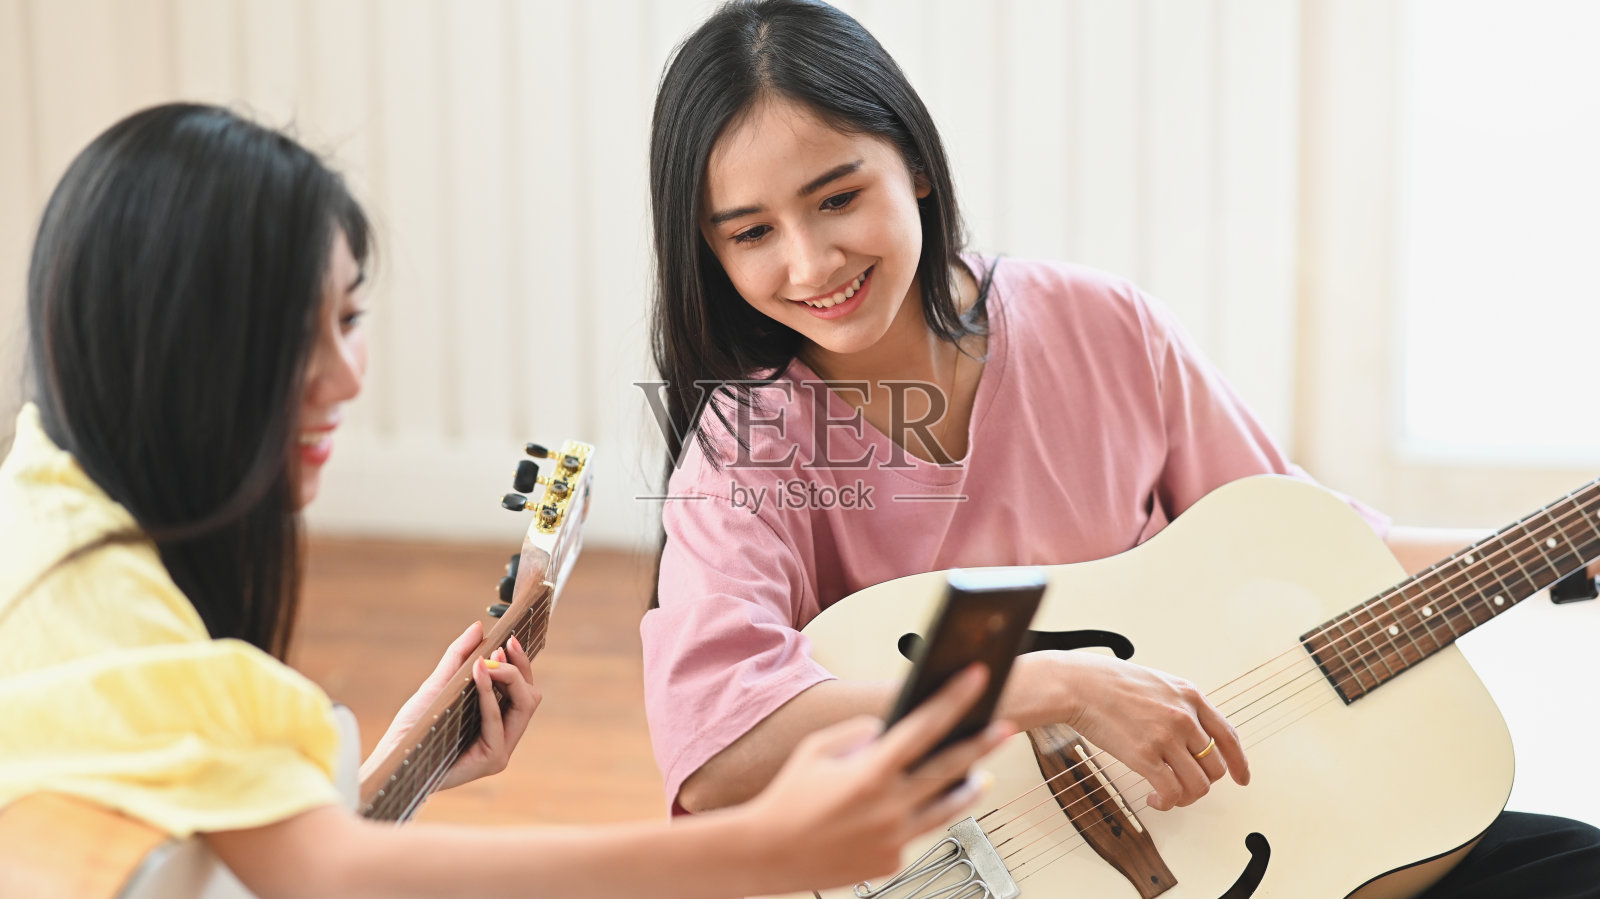 这张照片是年轻女性在舒适的客厅/音乐工作室的背景下，一起坐在木质的一楼，教/学习弹原声吉他。照片摄影图片